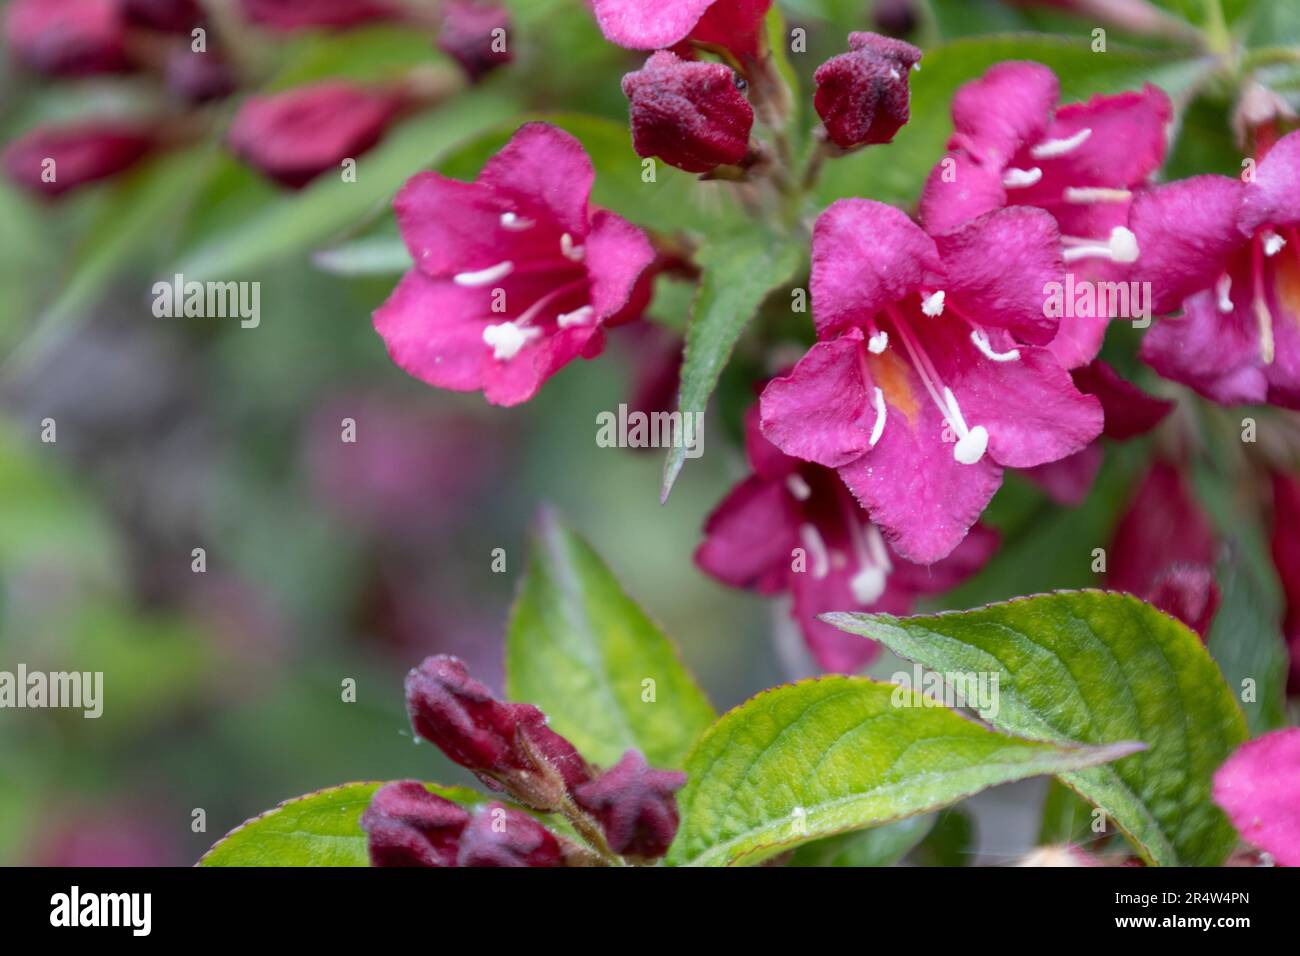 Weigela Bristol rubinrote Blumen im Garten Ungarns. Wunderschöne Weigela-Blumen vor dem Hintergrund. Stockfoto